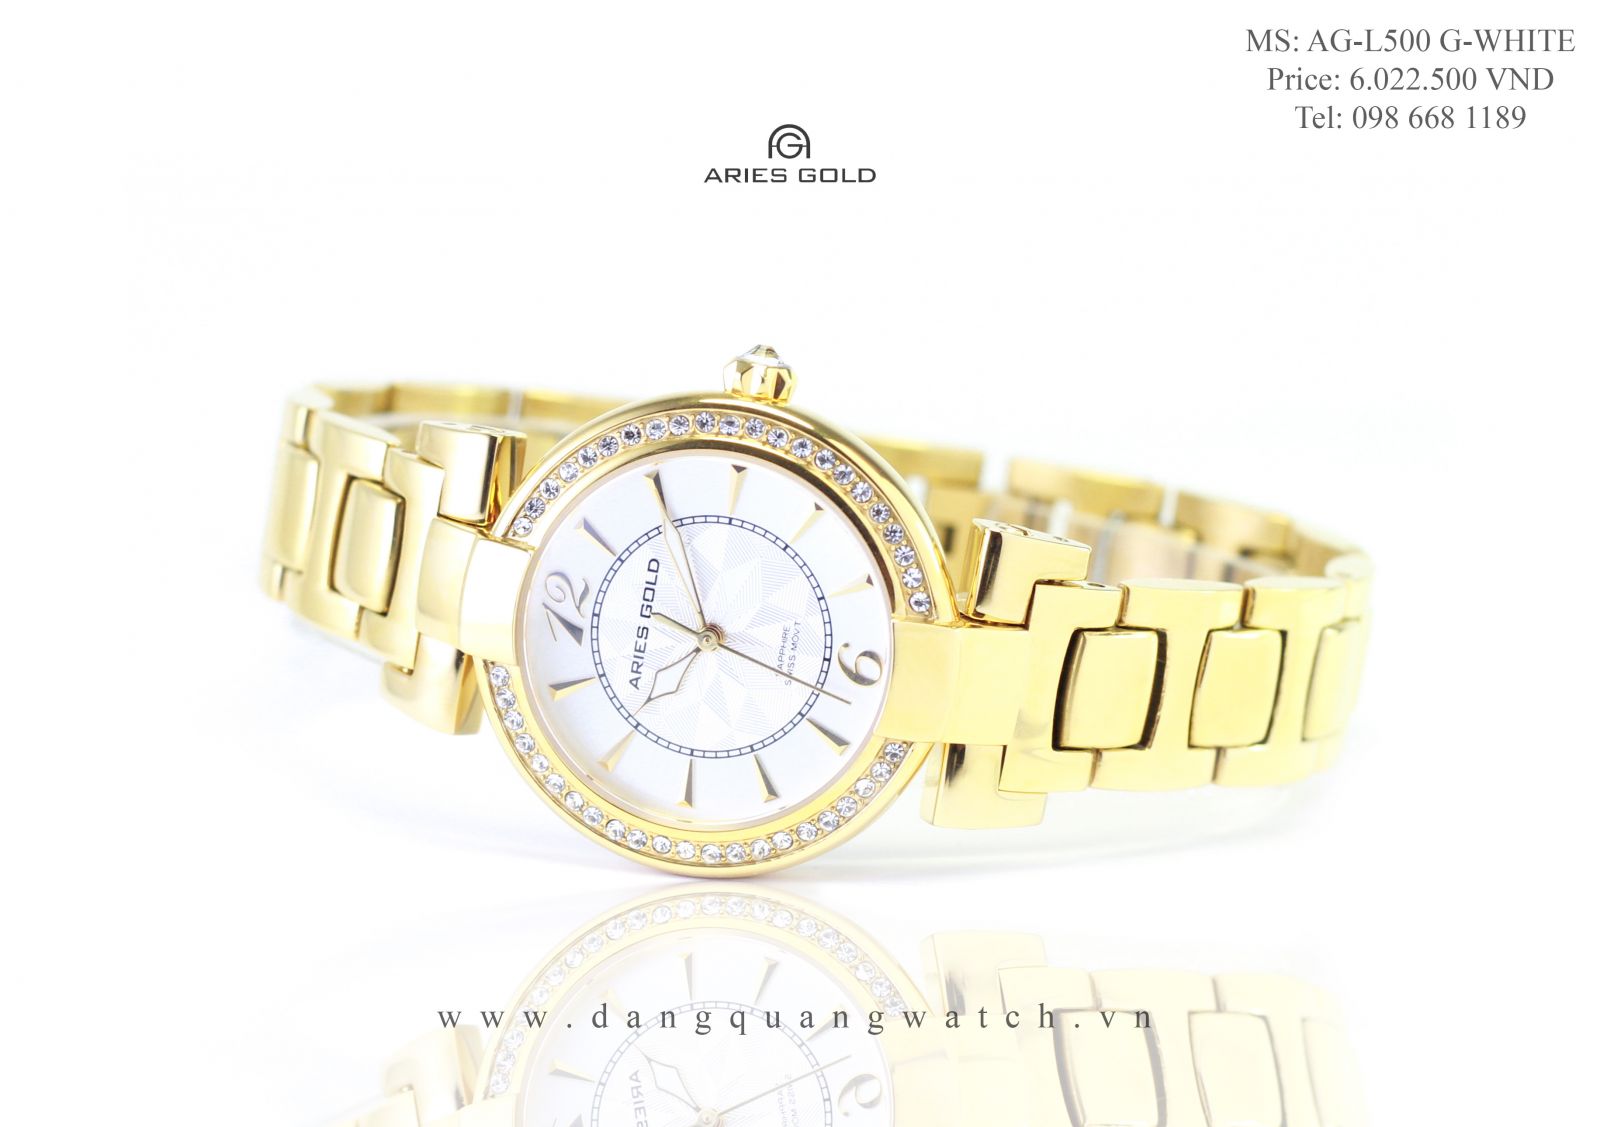 Đồng hồ chính hãng Đăng Quang Watch khai trương 2 showroom mới